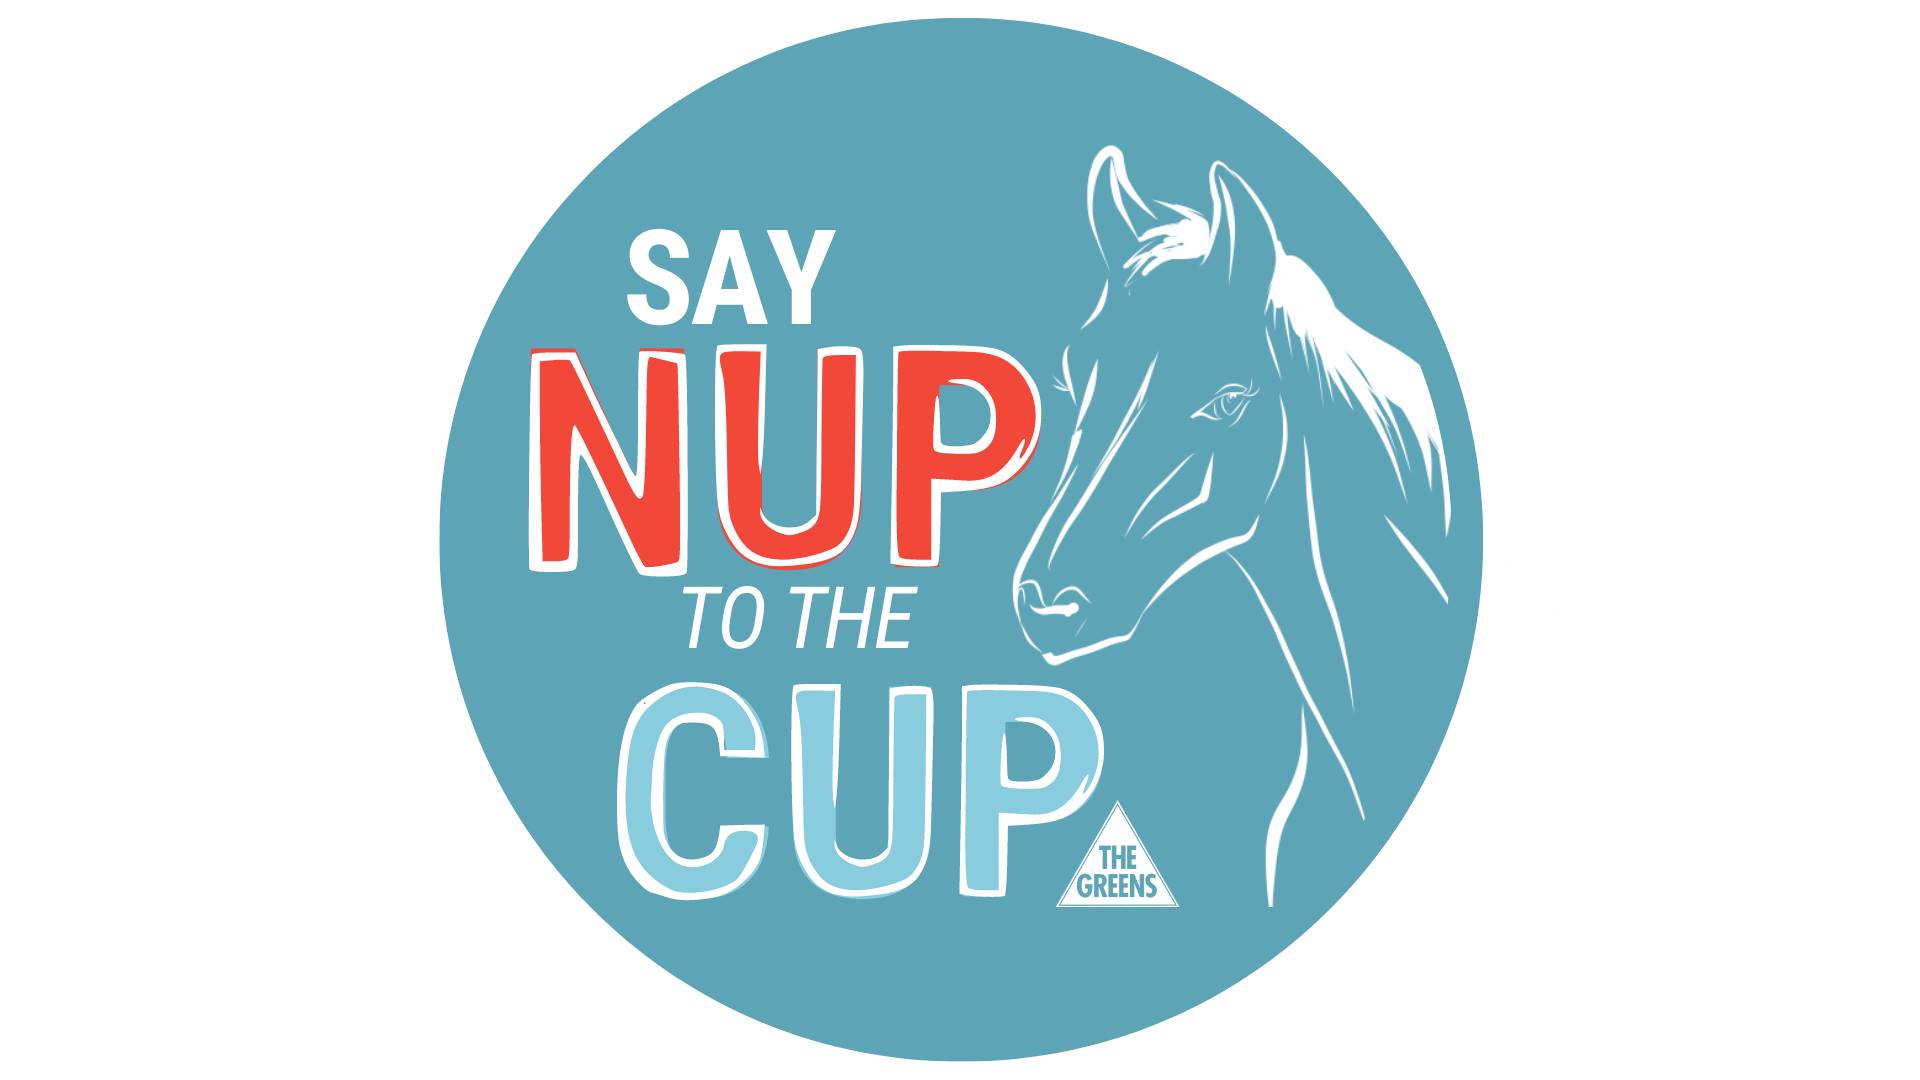 Greens SA Nup Cup